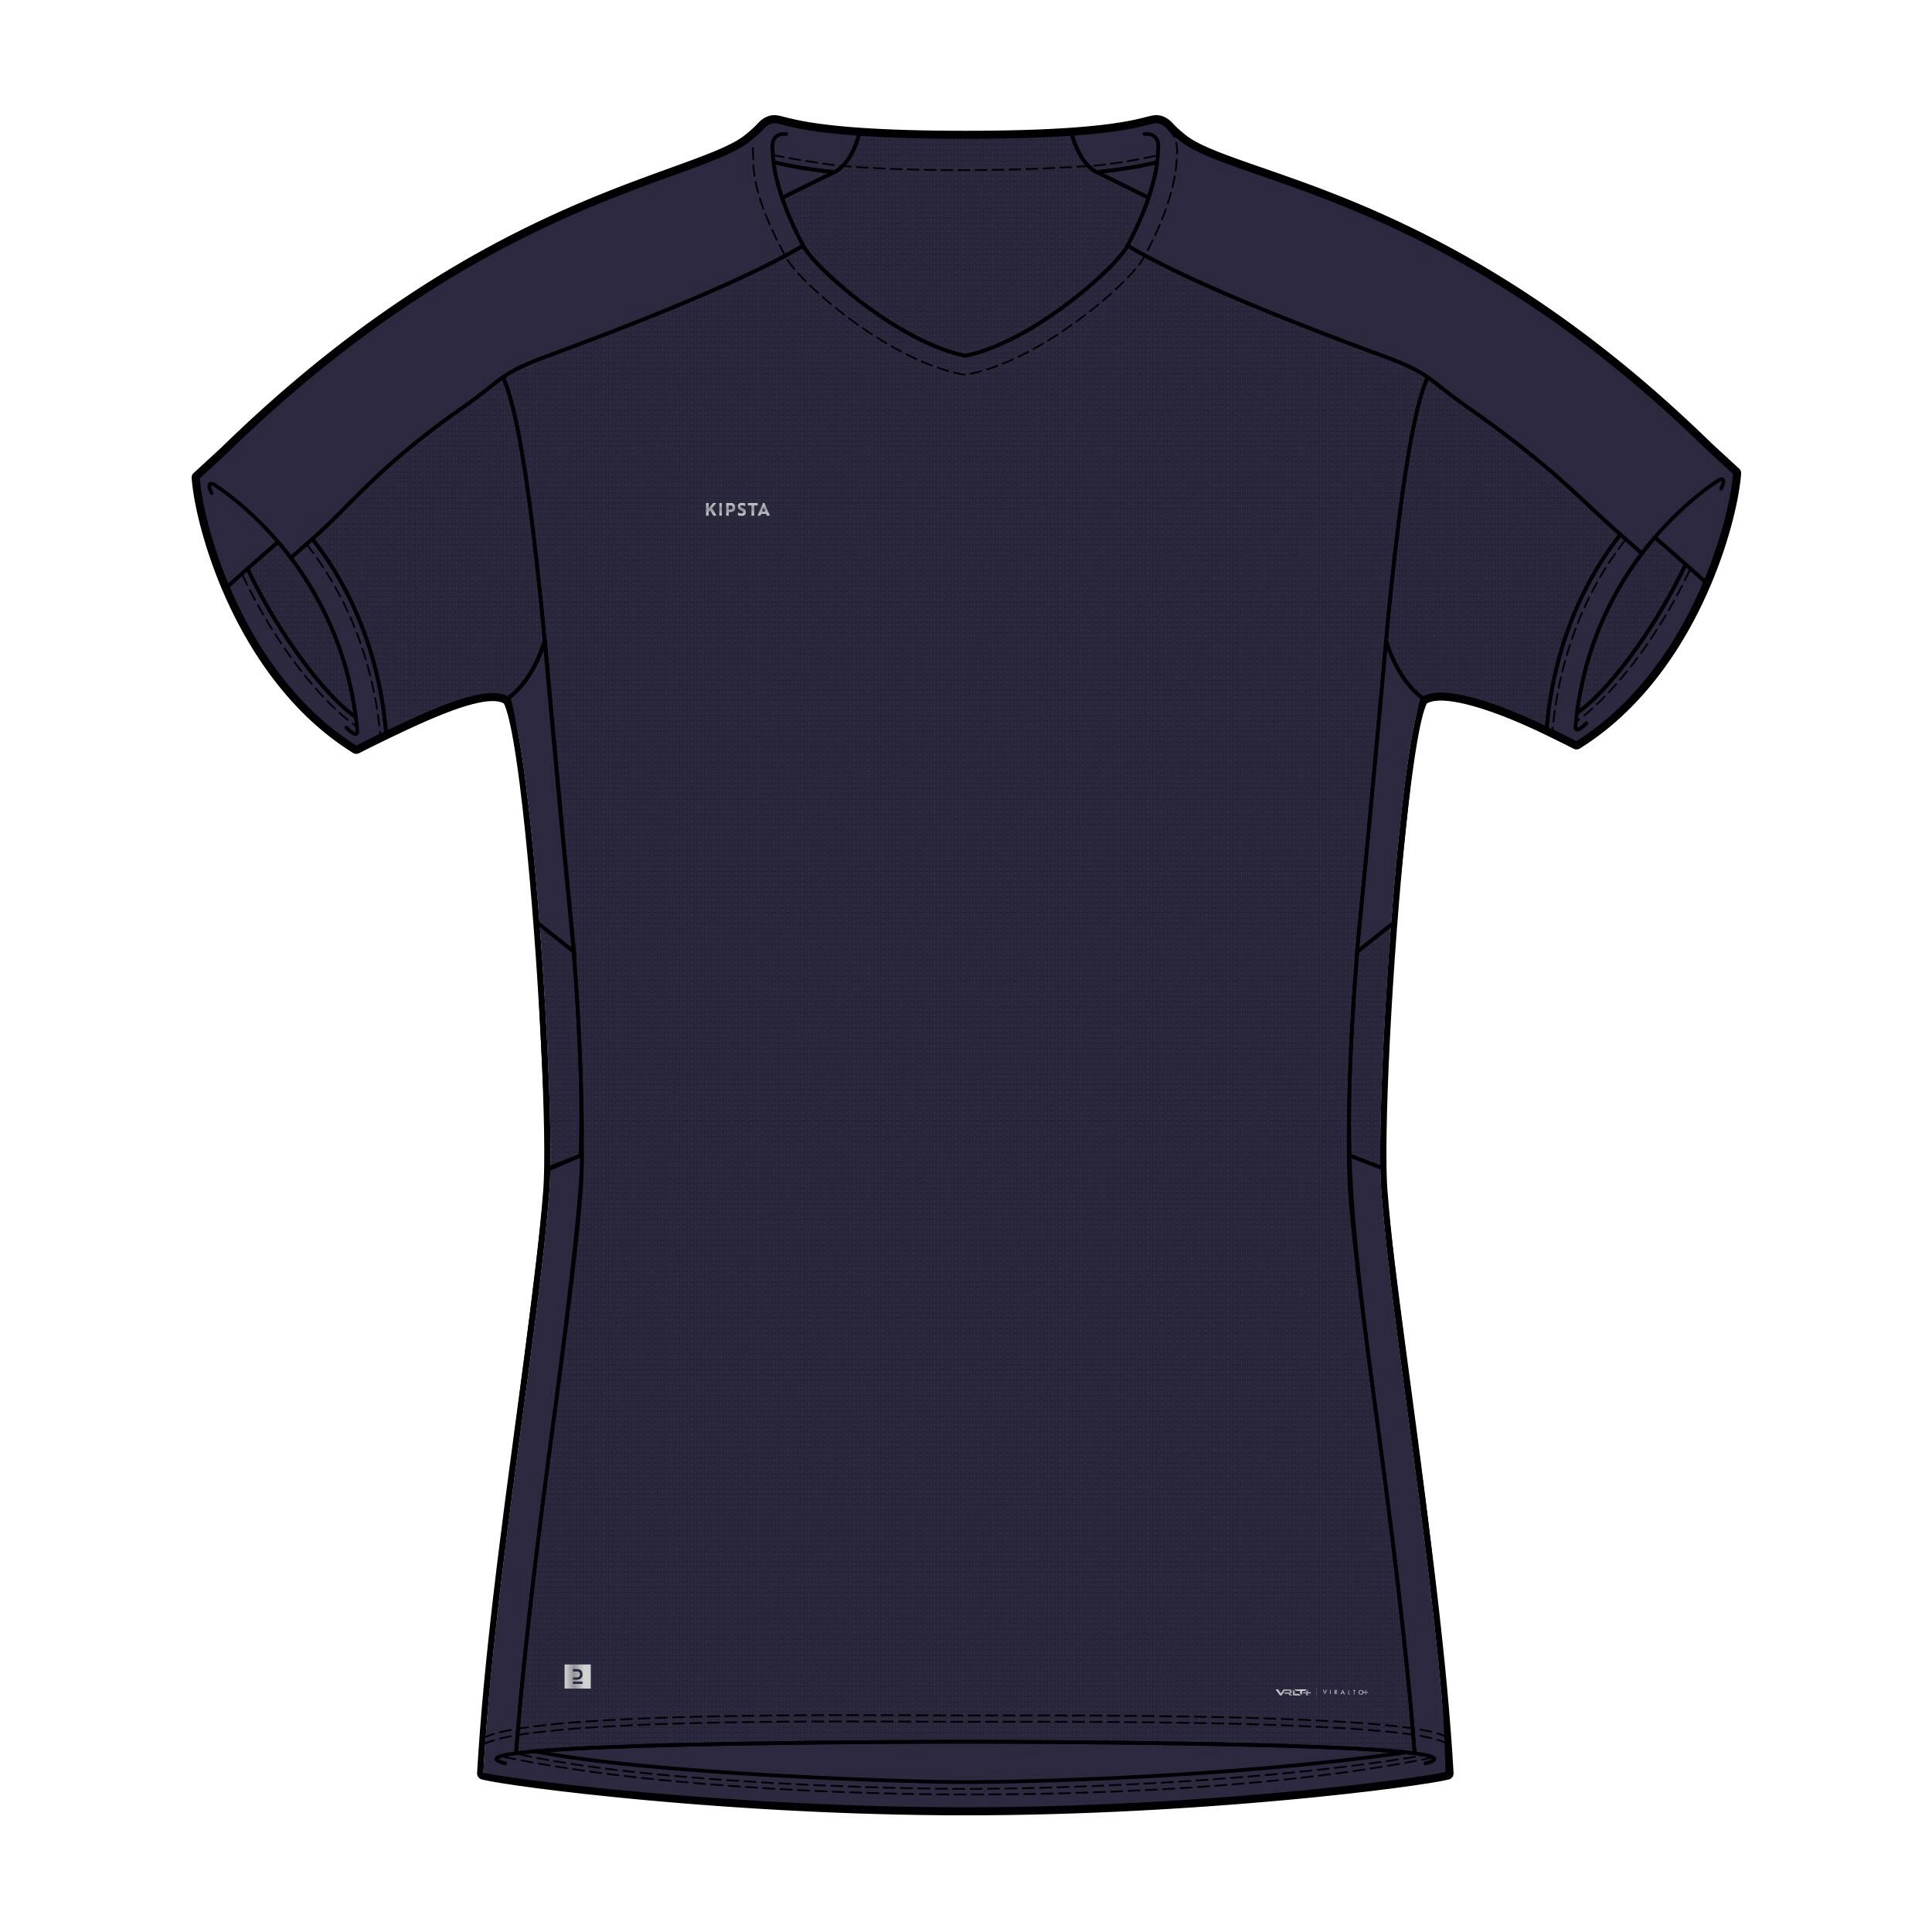 Women's Football Shirt Viralto - Plain Navy 10/10